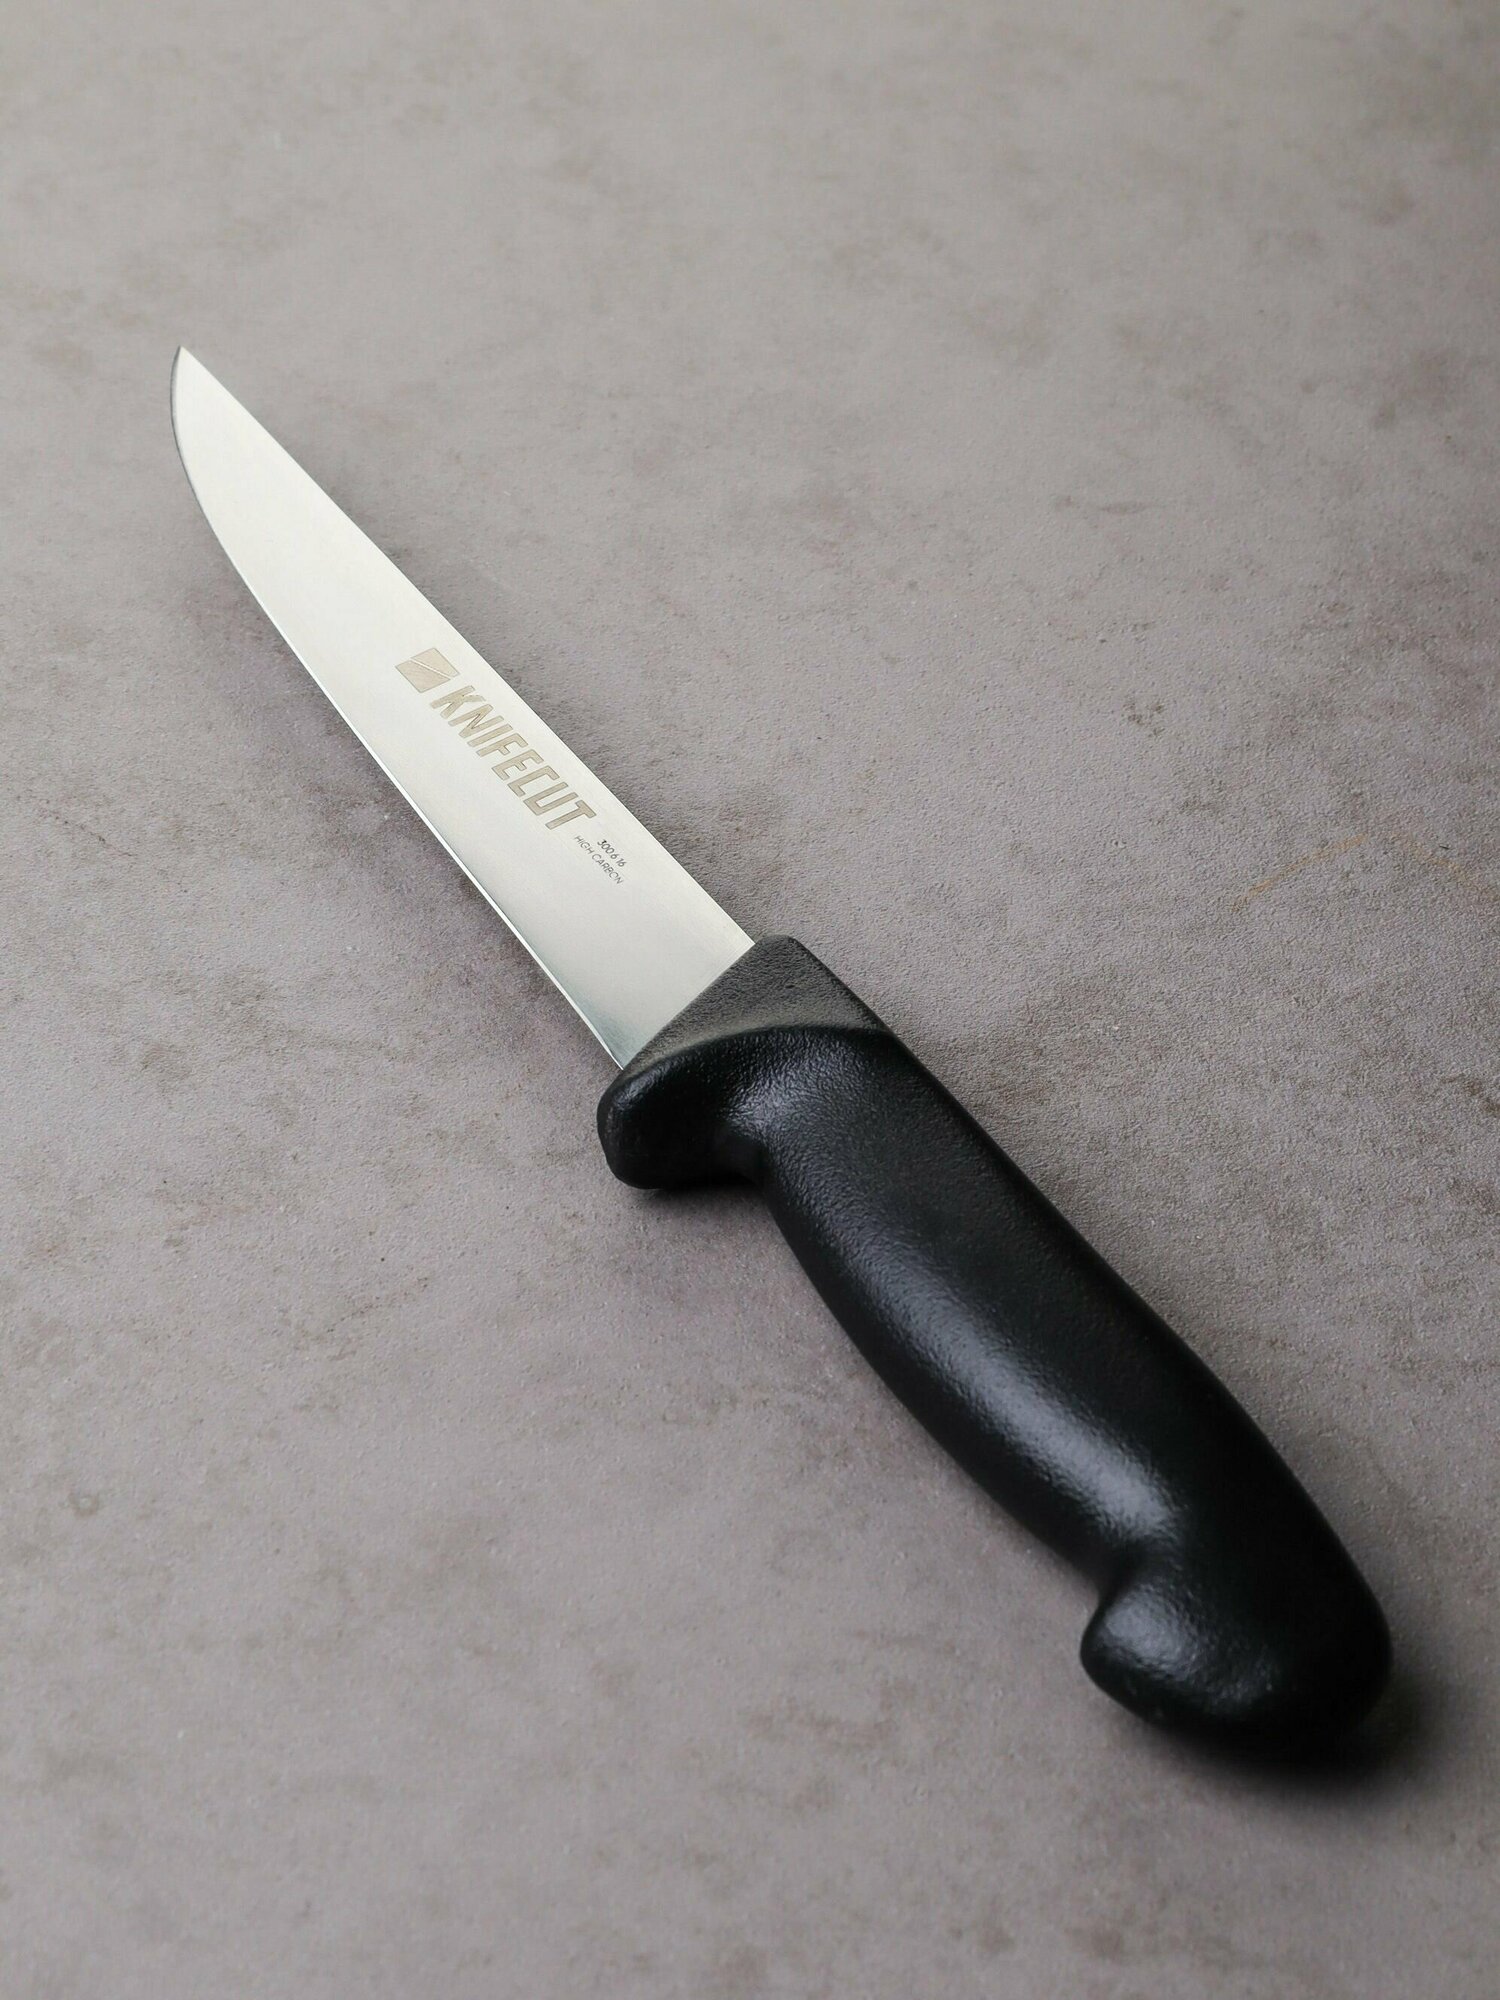 Нож обвалочный KNIFECUT, универсальный, для обвалки и разделки мяса, птицы, рыбы, длина лезвия 16 см